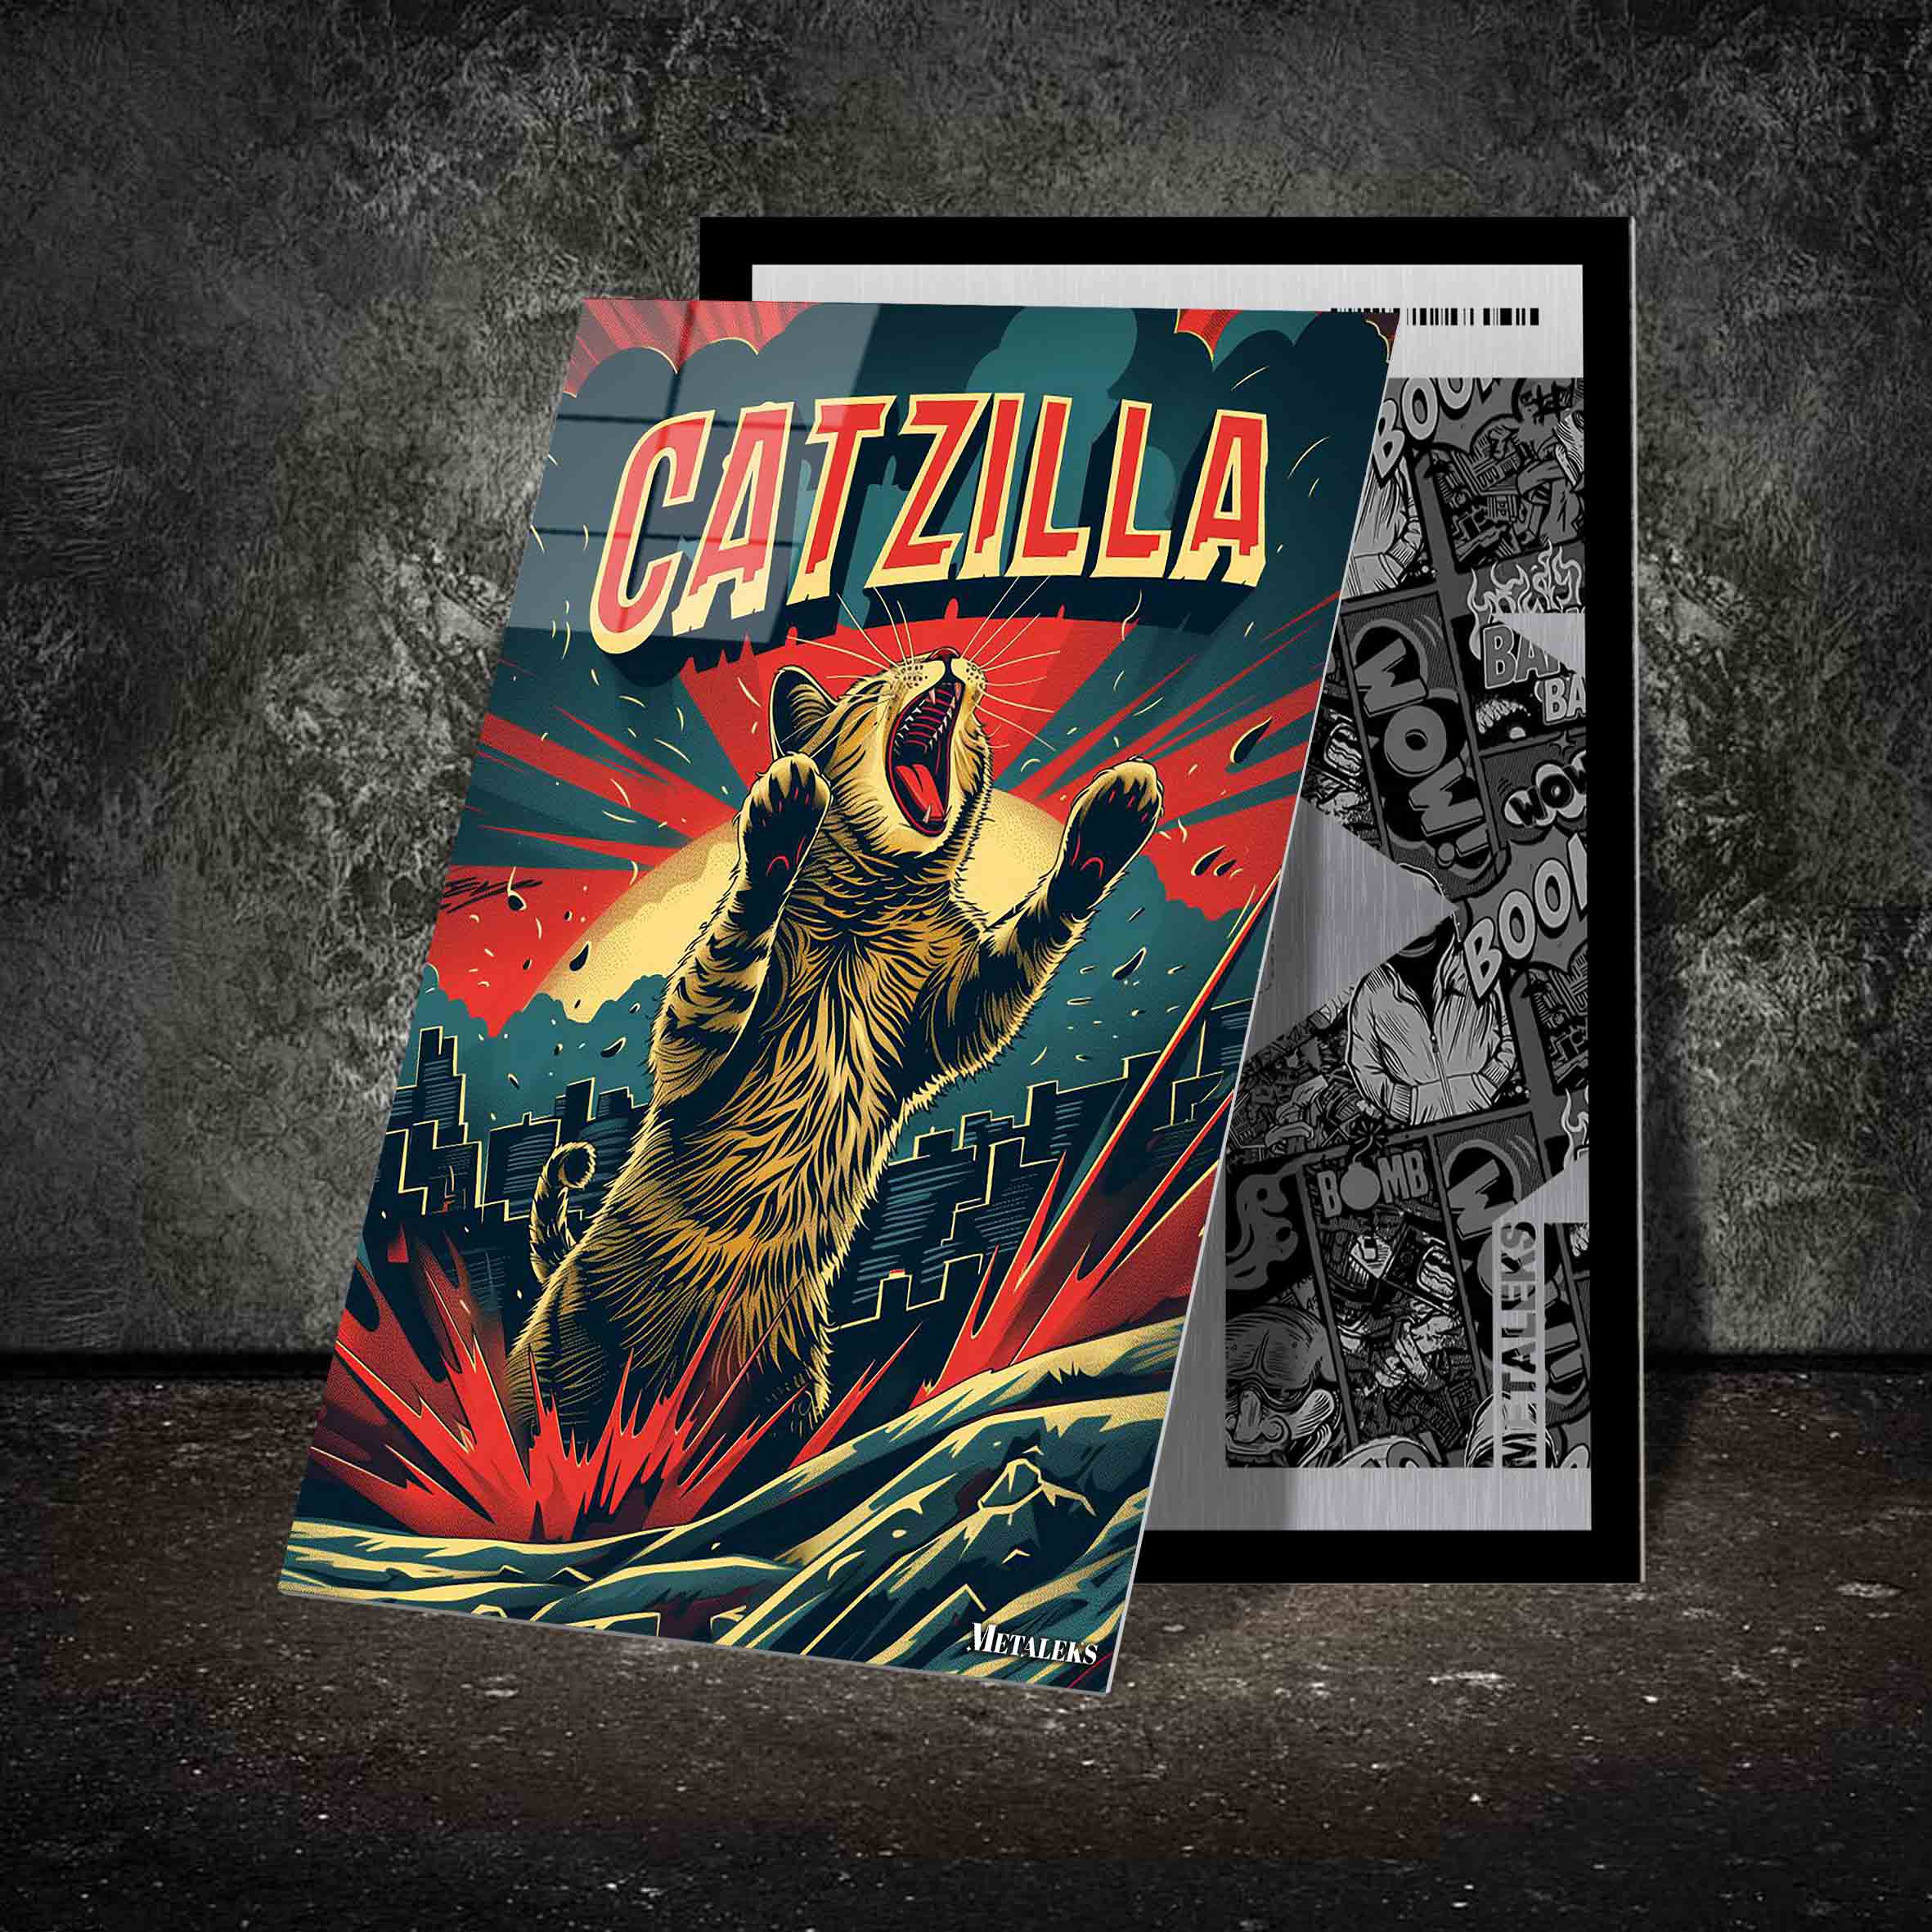 Catzilla 1-designed by @Vizio